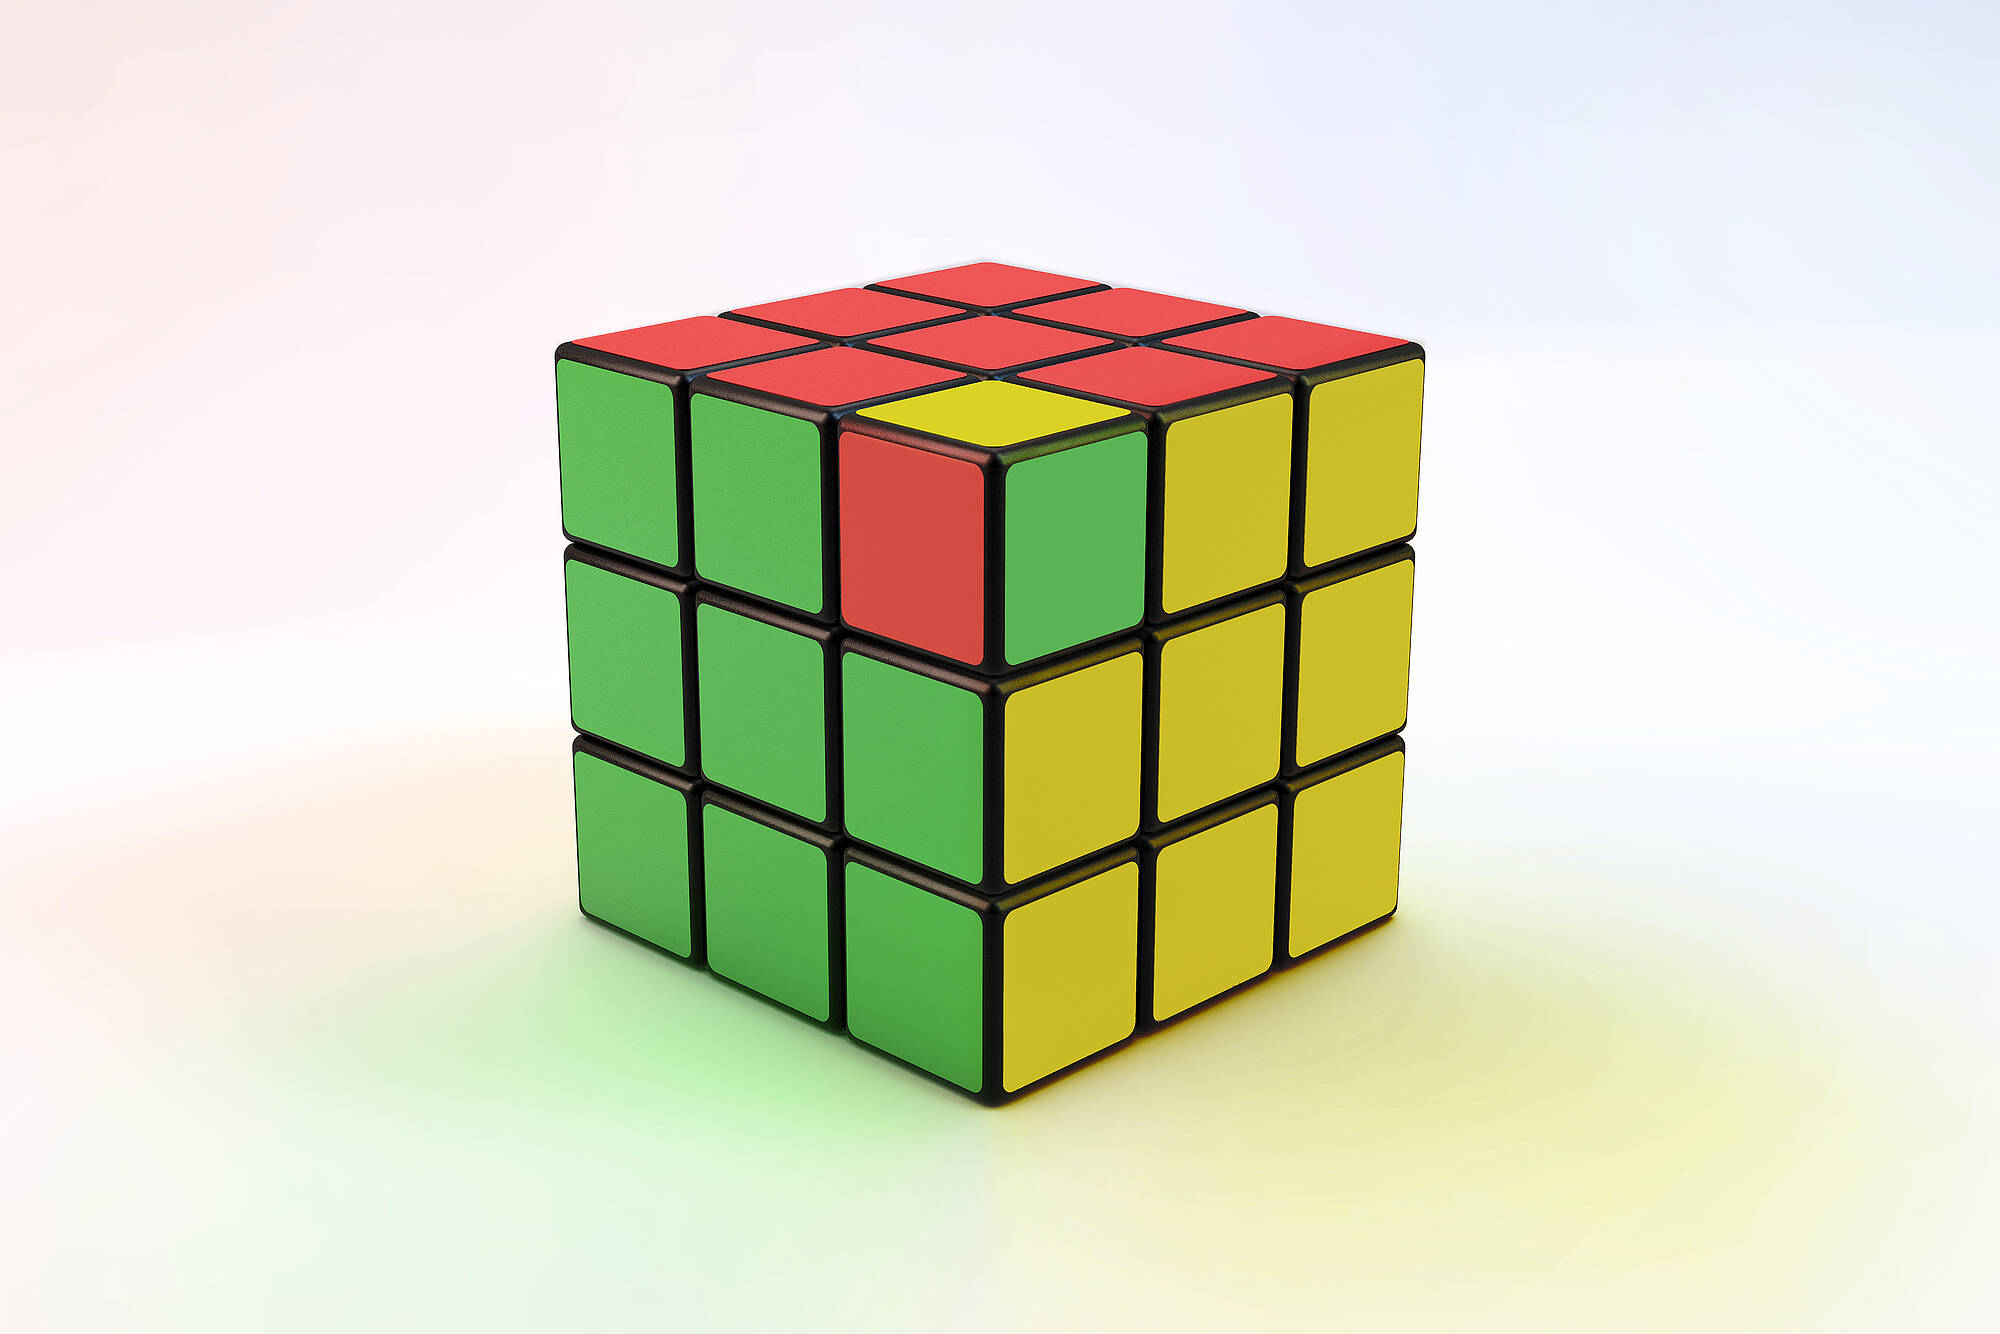 Zauberwürfel beziehungsweise Rubik's Cube in den Farben der Ampelkoalition Rot, Grün und Gelb.